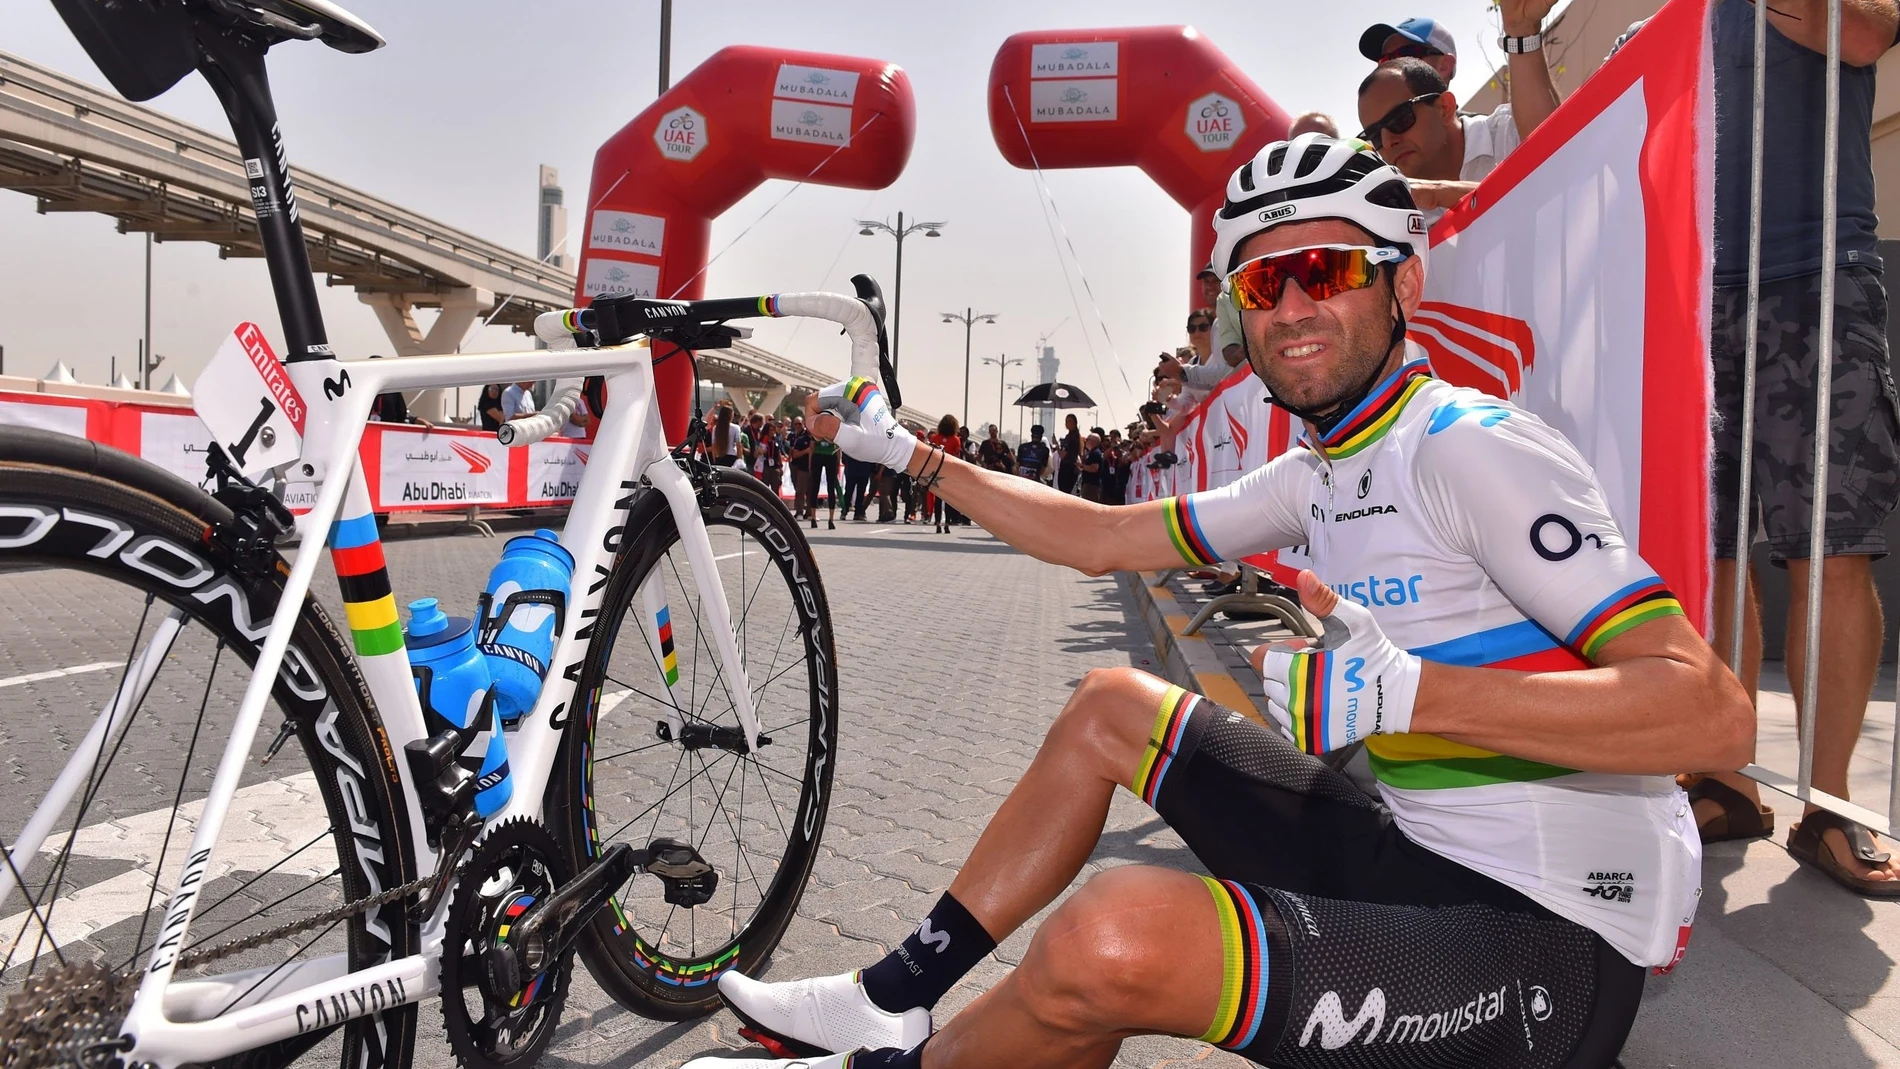 Ciclismo.- El Movistar Team se une a la campaña #CruzRojaResponde y sortea la bicicleta de 2019 de Alejandro Valverde